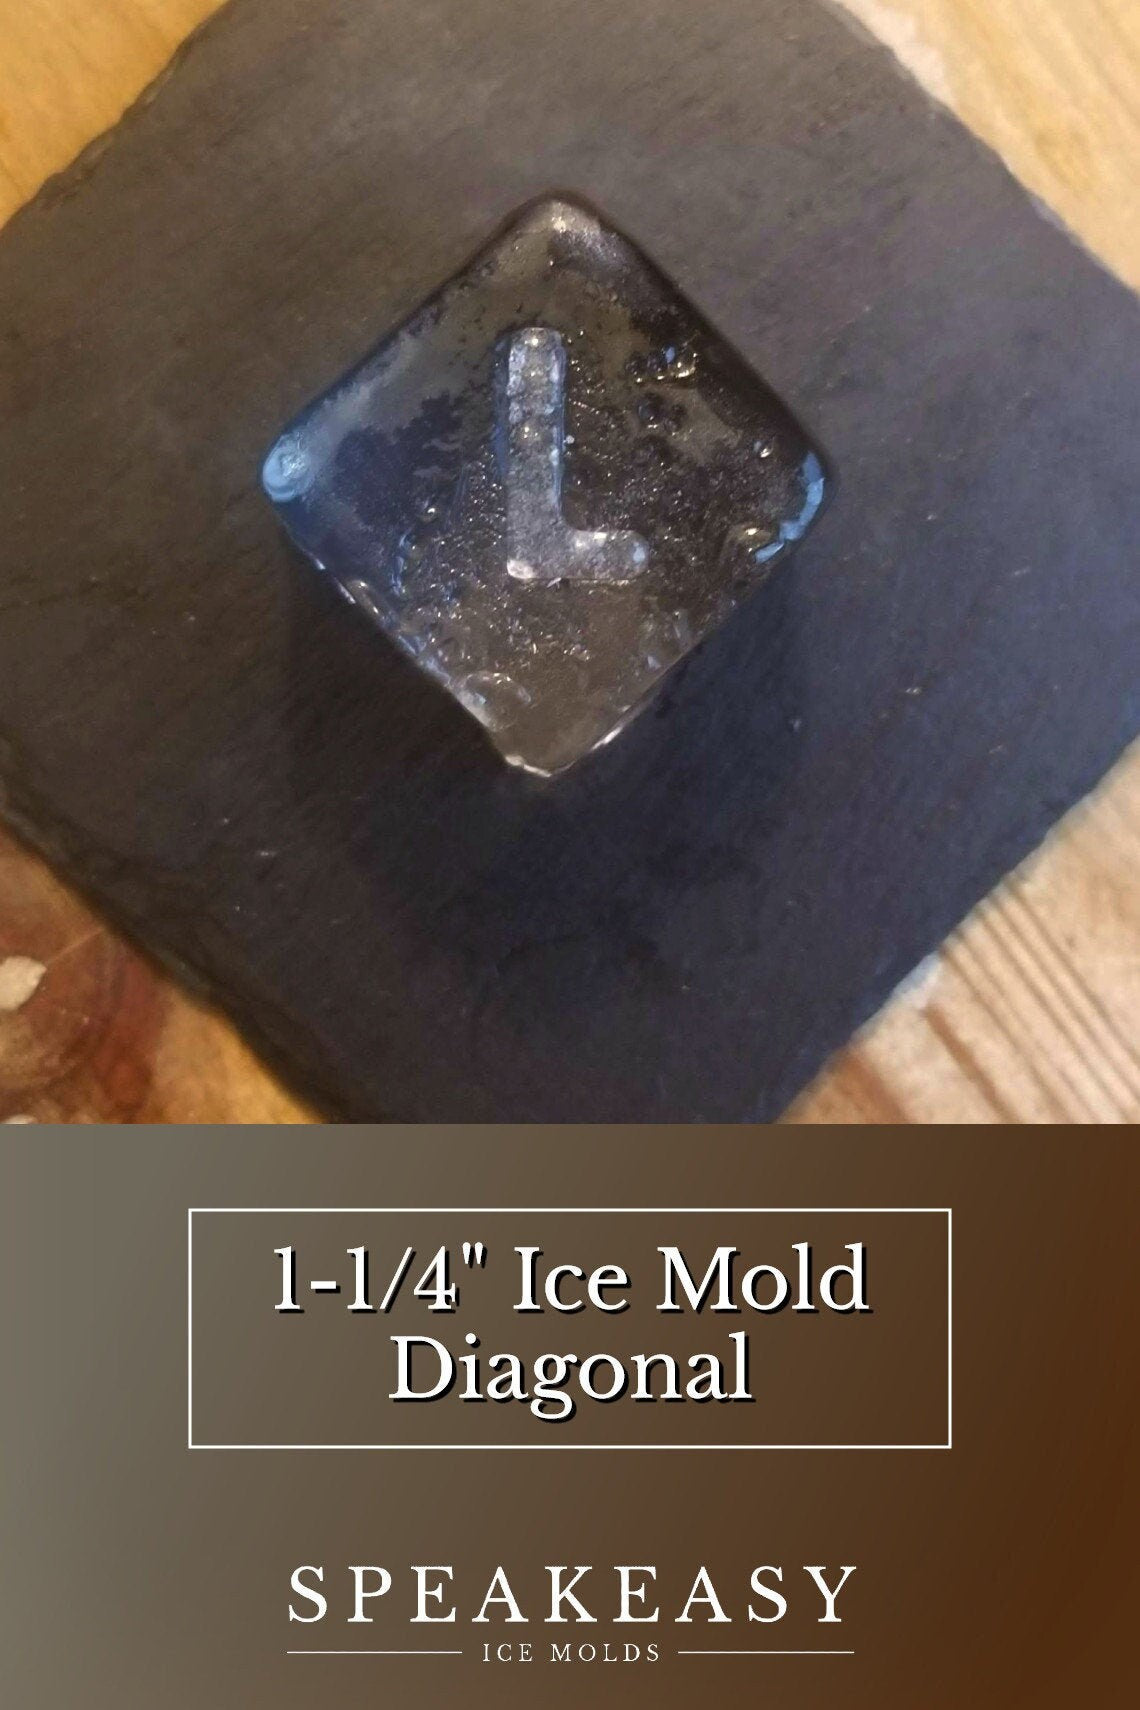 Personalized Whiskey Ice Mold, Monogram Ice Cube Mold, Custom Ice